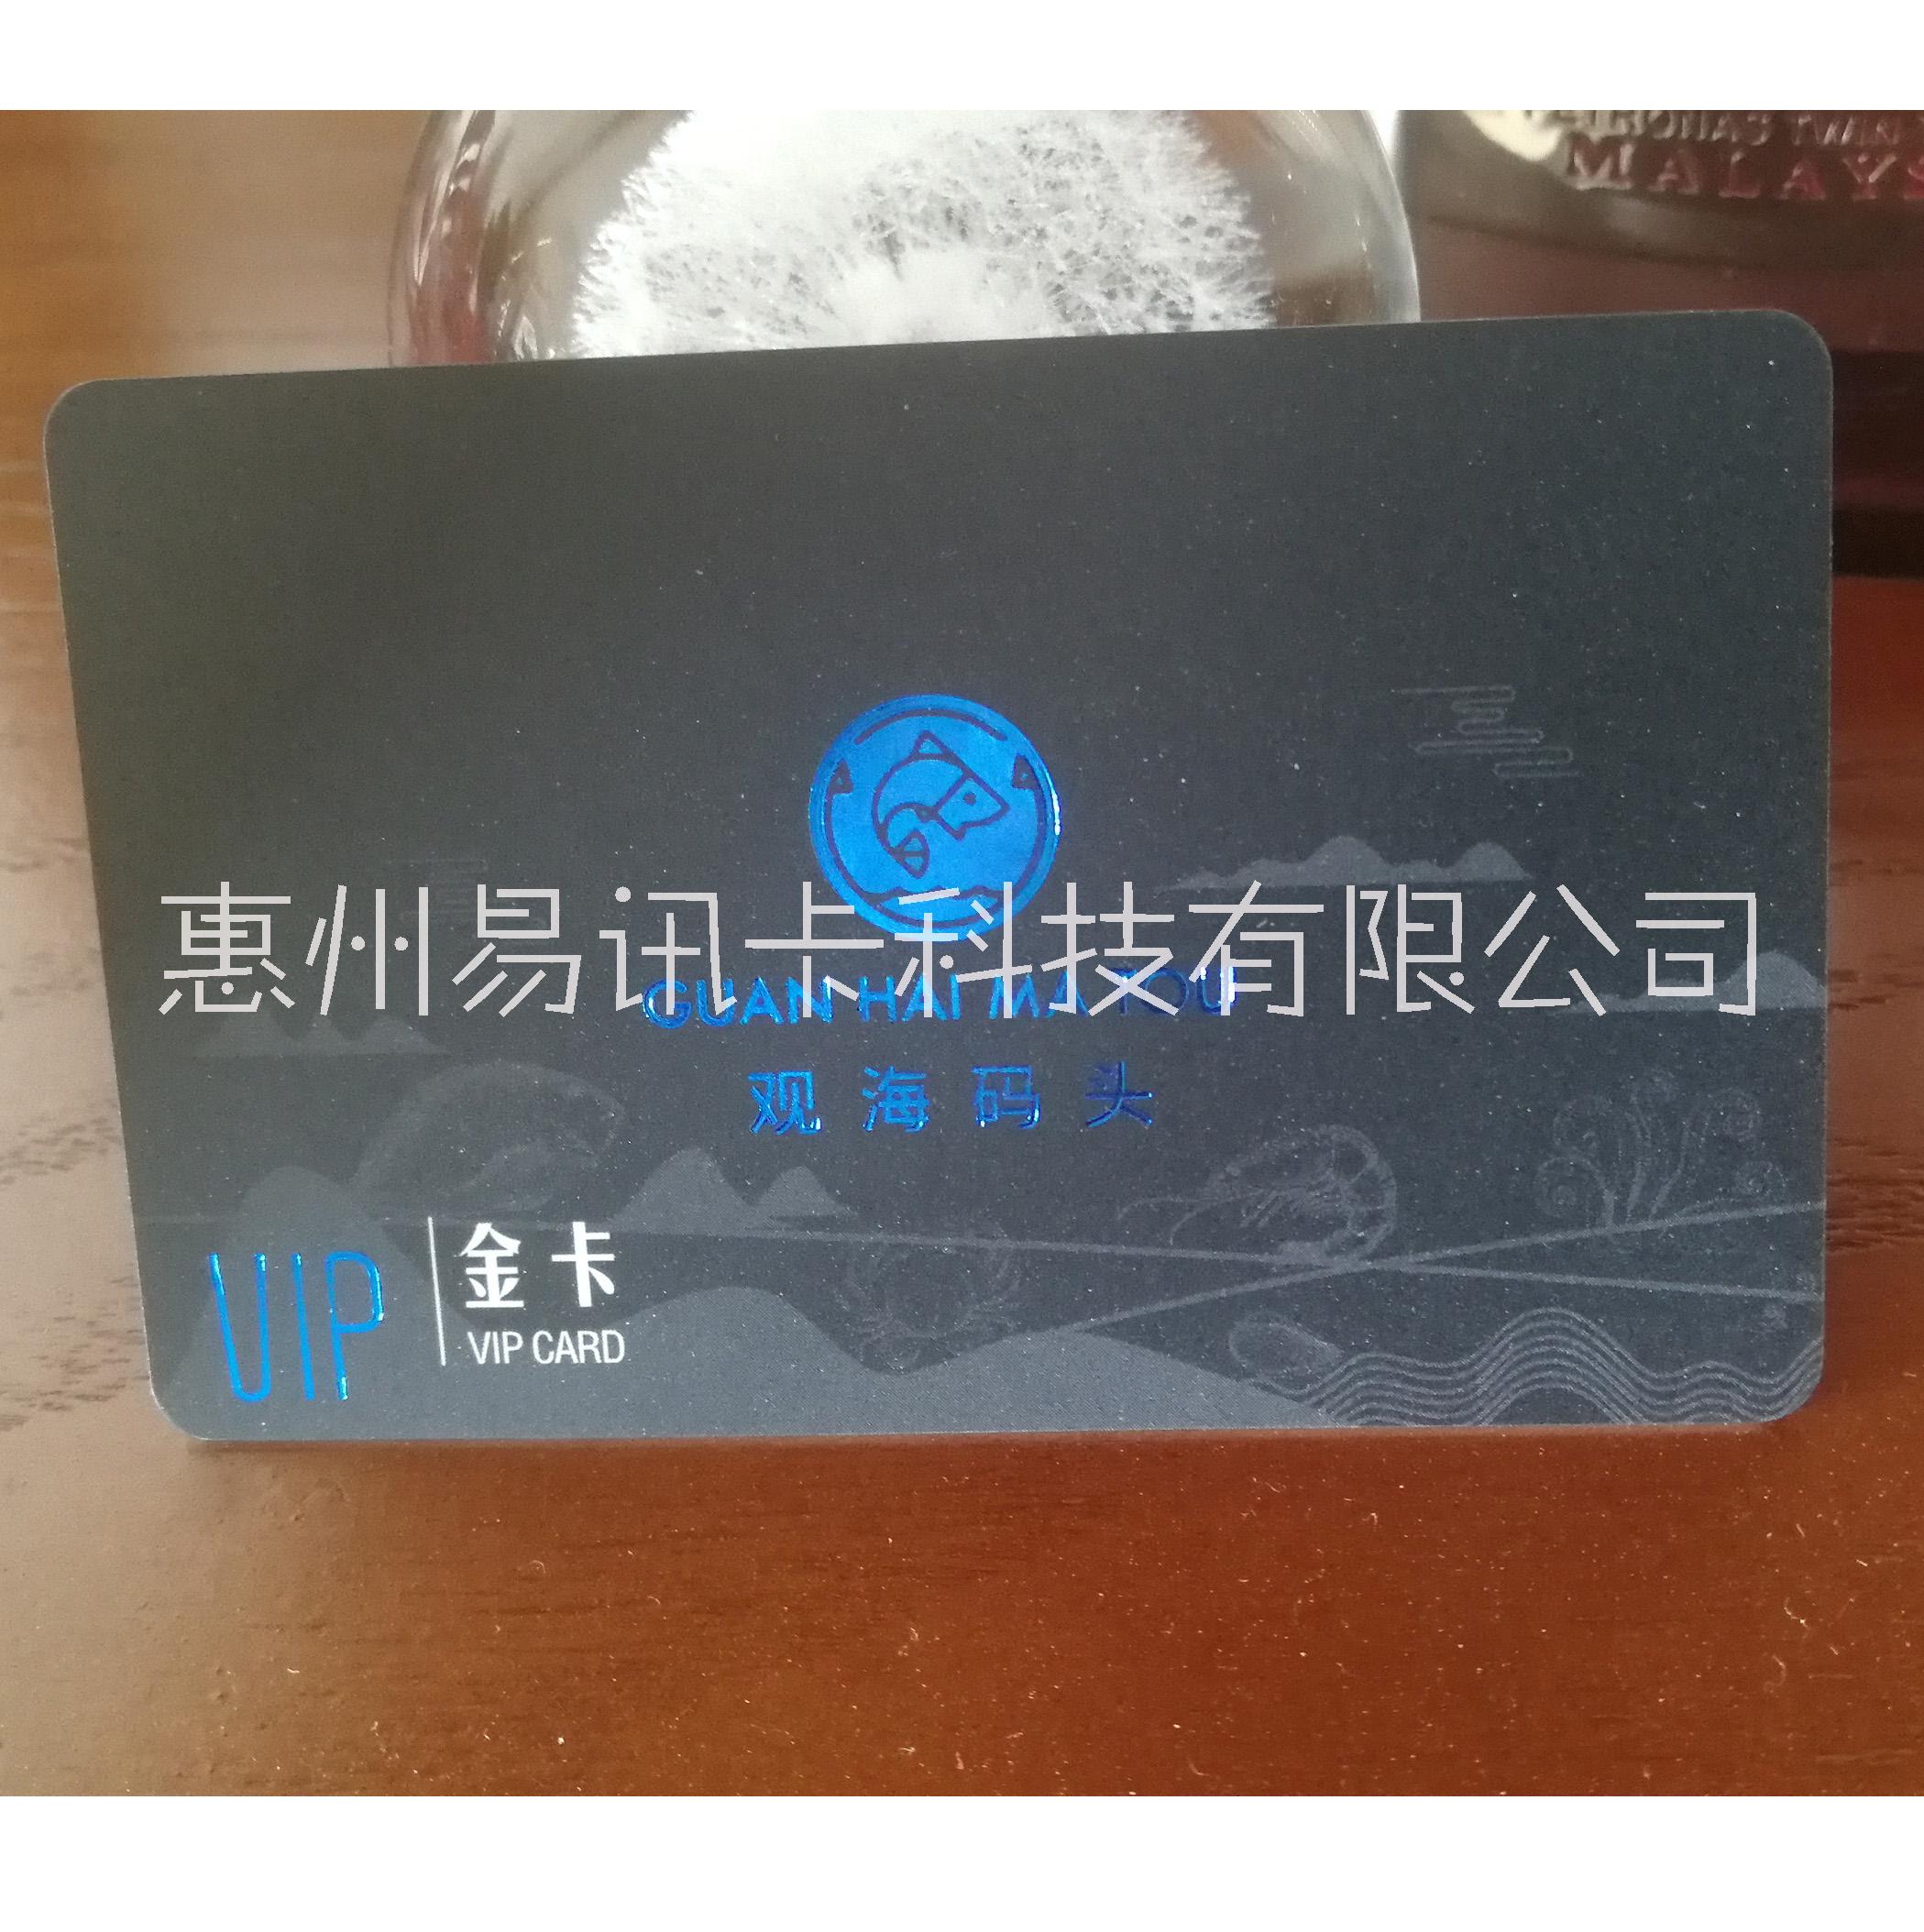 会员卡制作惠州会员卡制作就找易讯卡科技免费设计